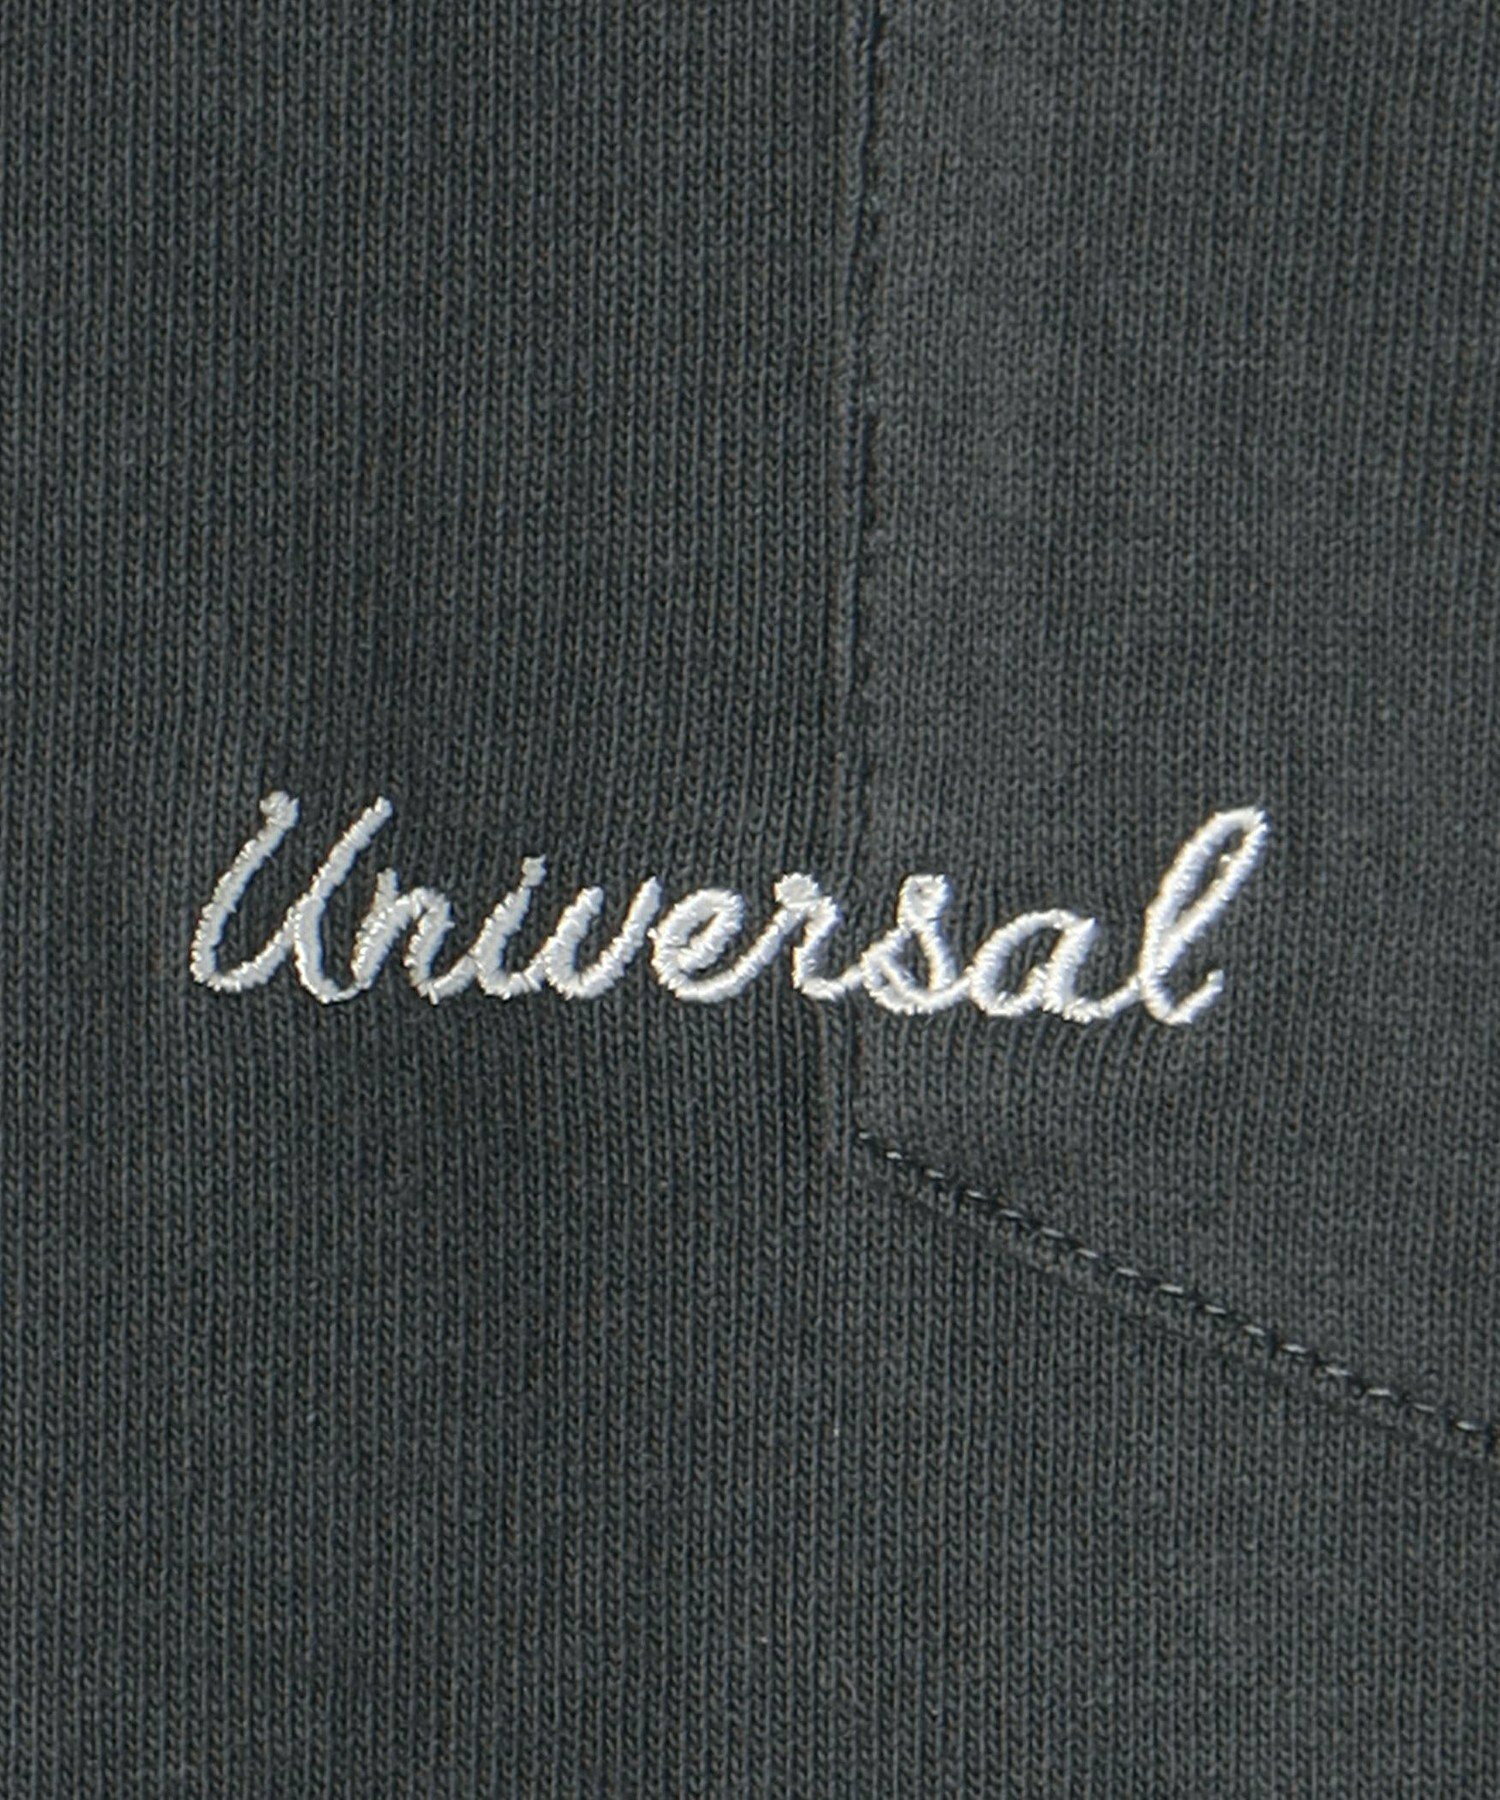 【別注】<UNIVERSAL OVERALL>GLR ロゴ エンブロ ポケット Tシャツ